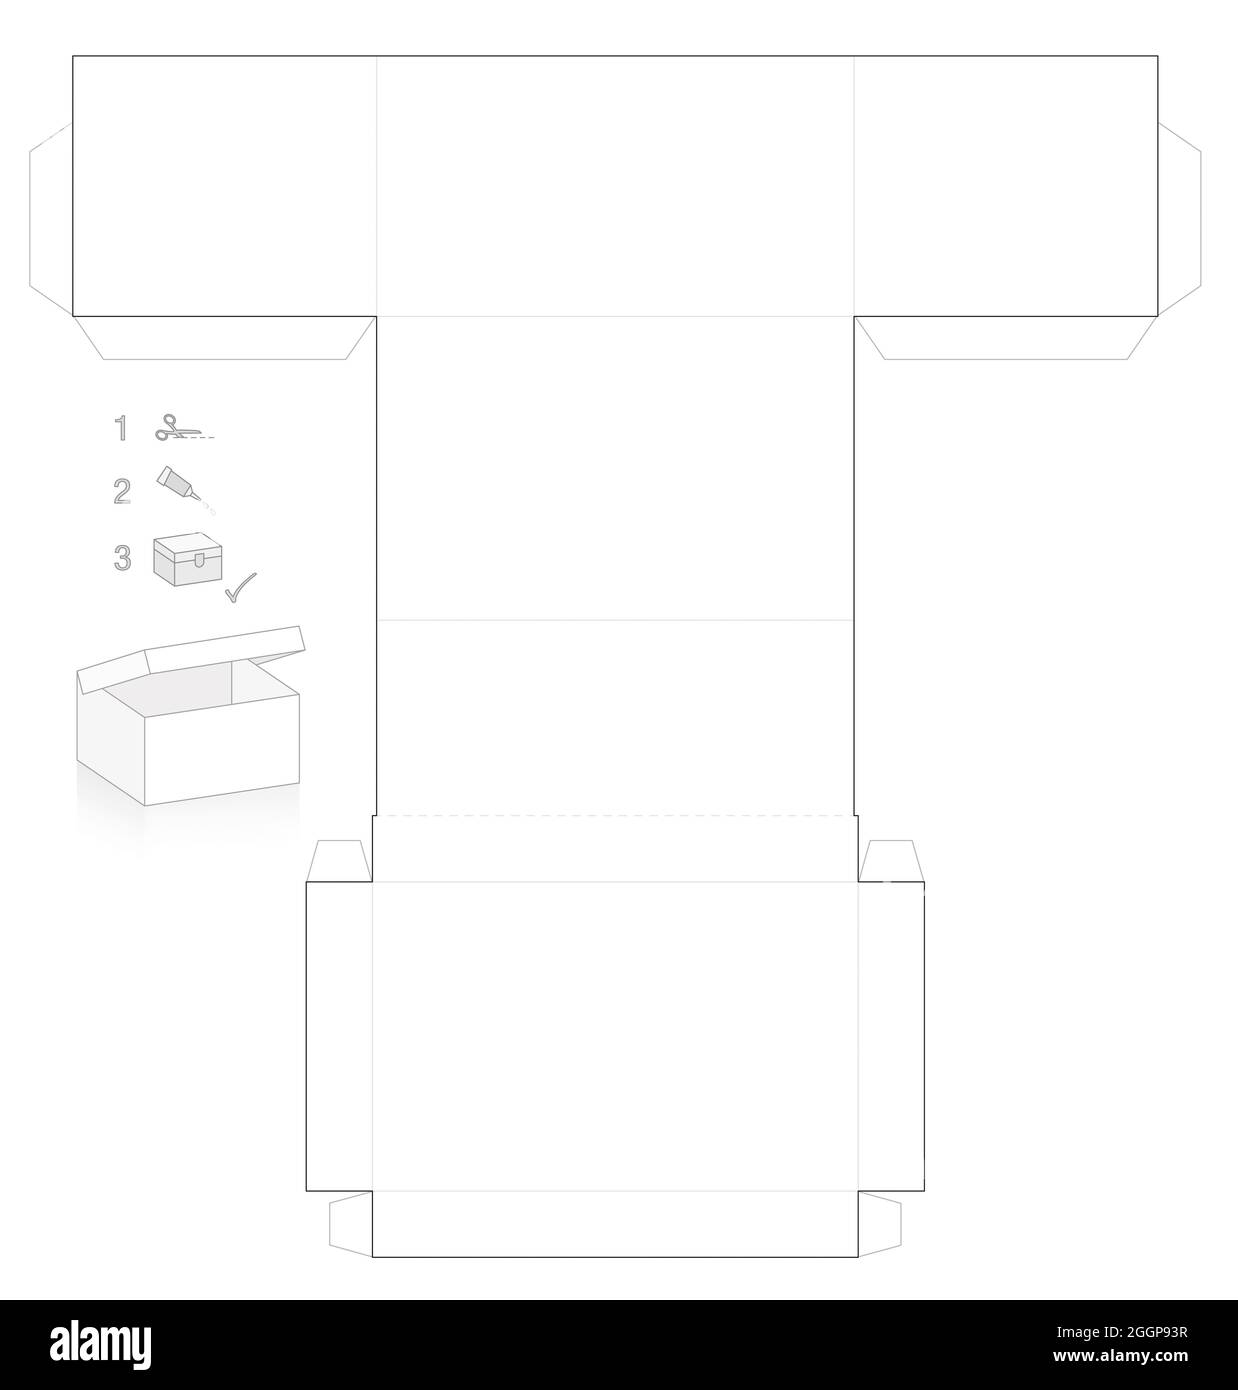 Schablone aus Karton mit Deckel, der geöffnet werden kann, einfaches  Papiermodell. Ausschneiden, falten und kleben Stockfotografie - Alamy